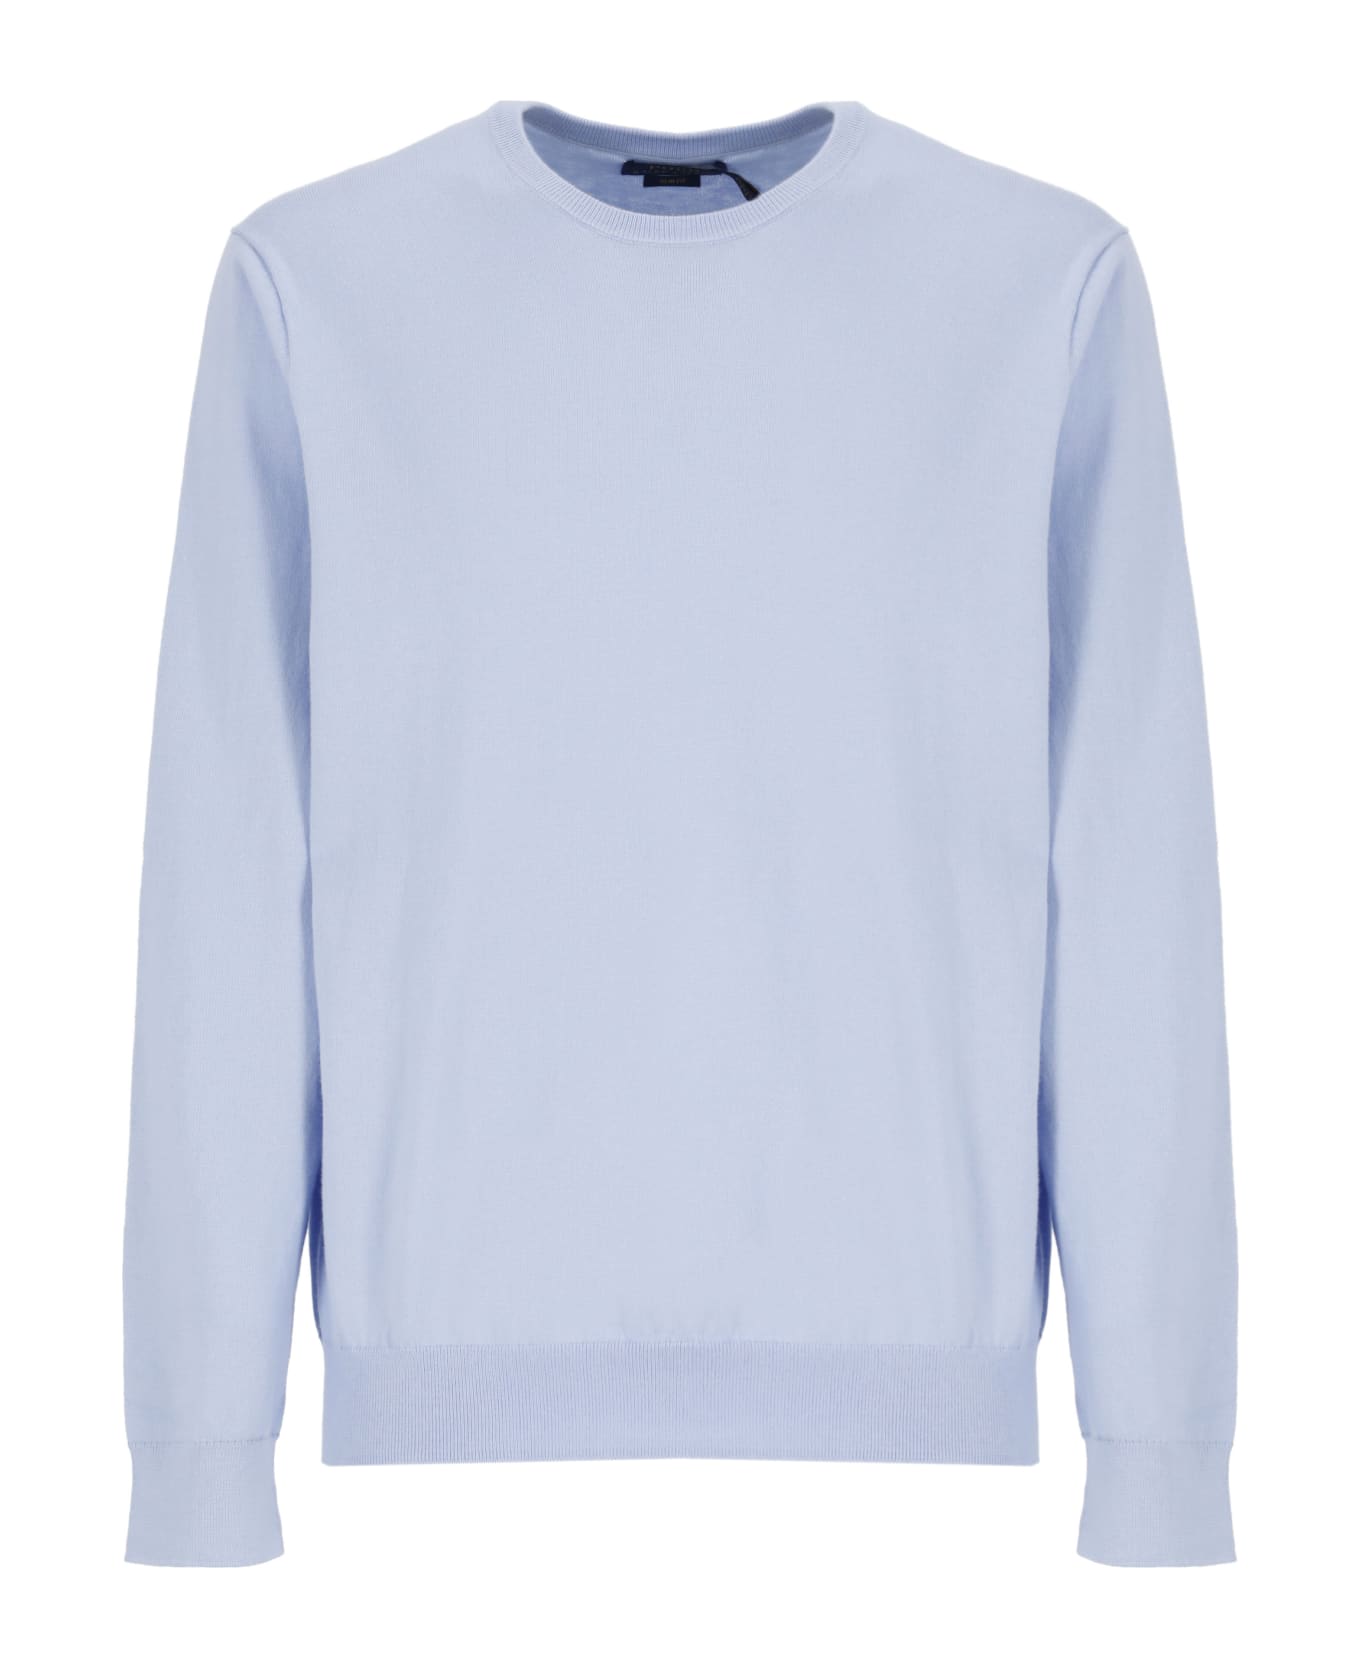 Ralph Lauren Short Sleeve Sweater Sweater - Light Blue